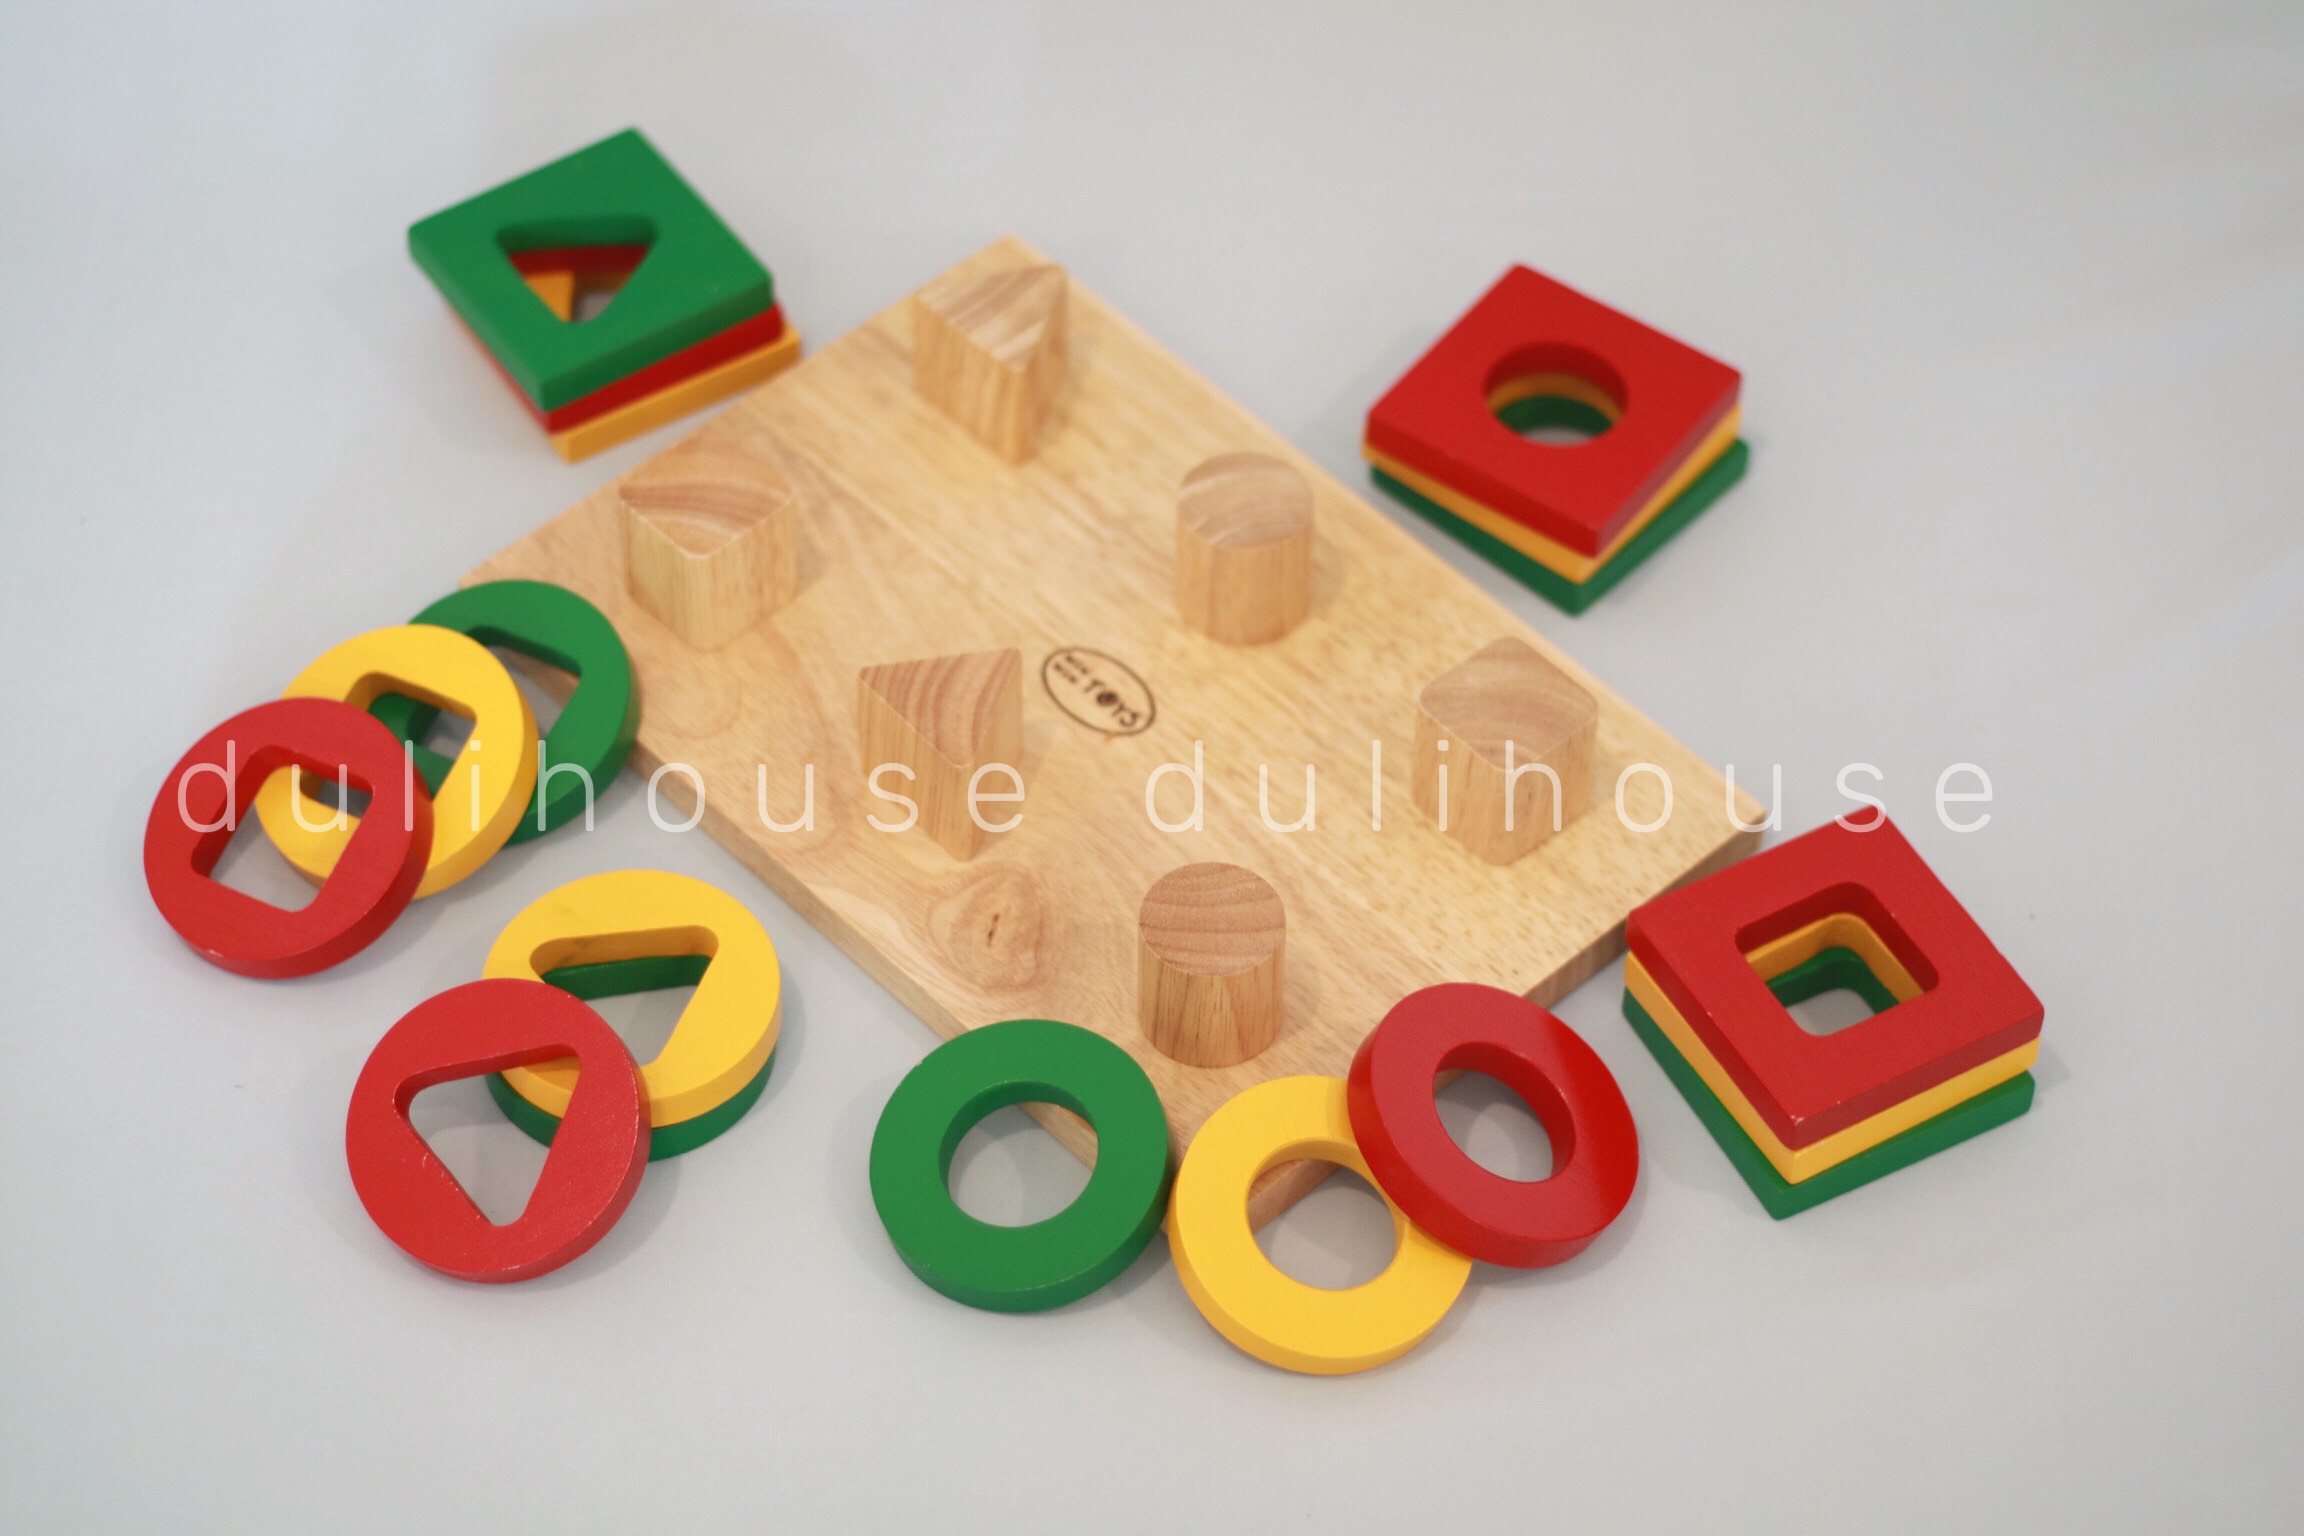 Đồ chơi gỗ cao cấp Bộ xếp 6 cọc, giúp bé phân biệt màu sắc, học cách so sánh, chọn lọc hình ảnh thích hợp để xếp vào đúng vị trí, tưởng tượng ra hình ảnh của bánh chưng, bánh dày qua các hình vuông & hình tròn - Sản xuất tại Việt Nam